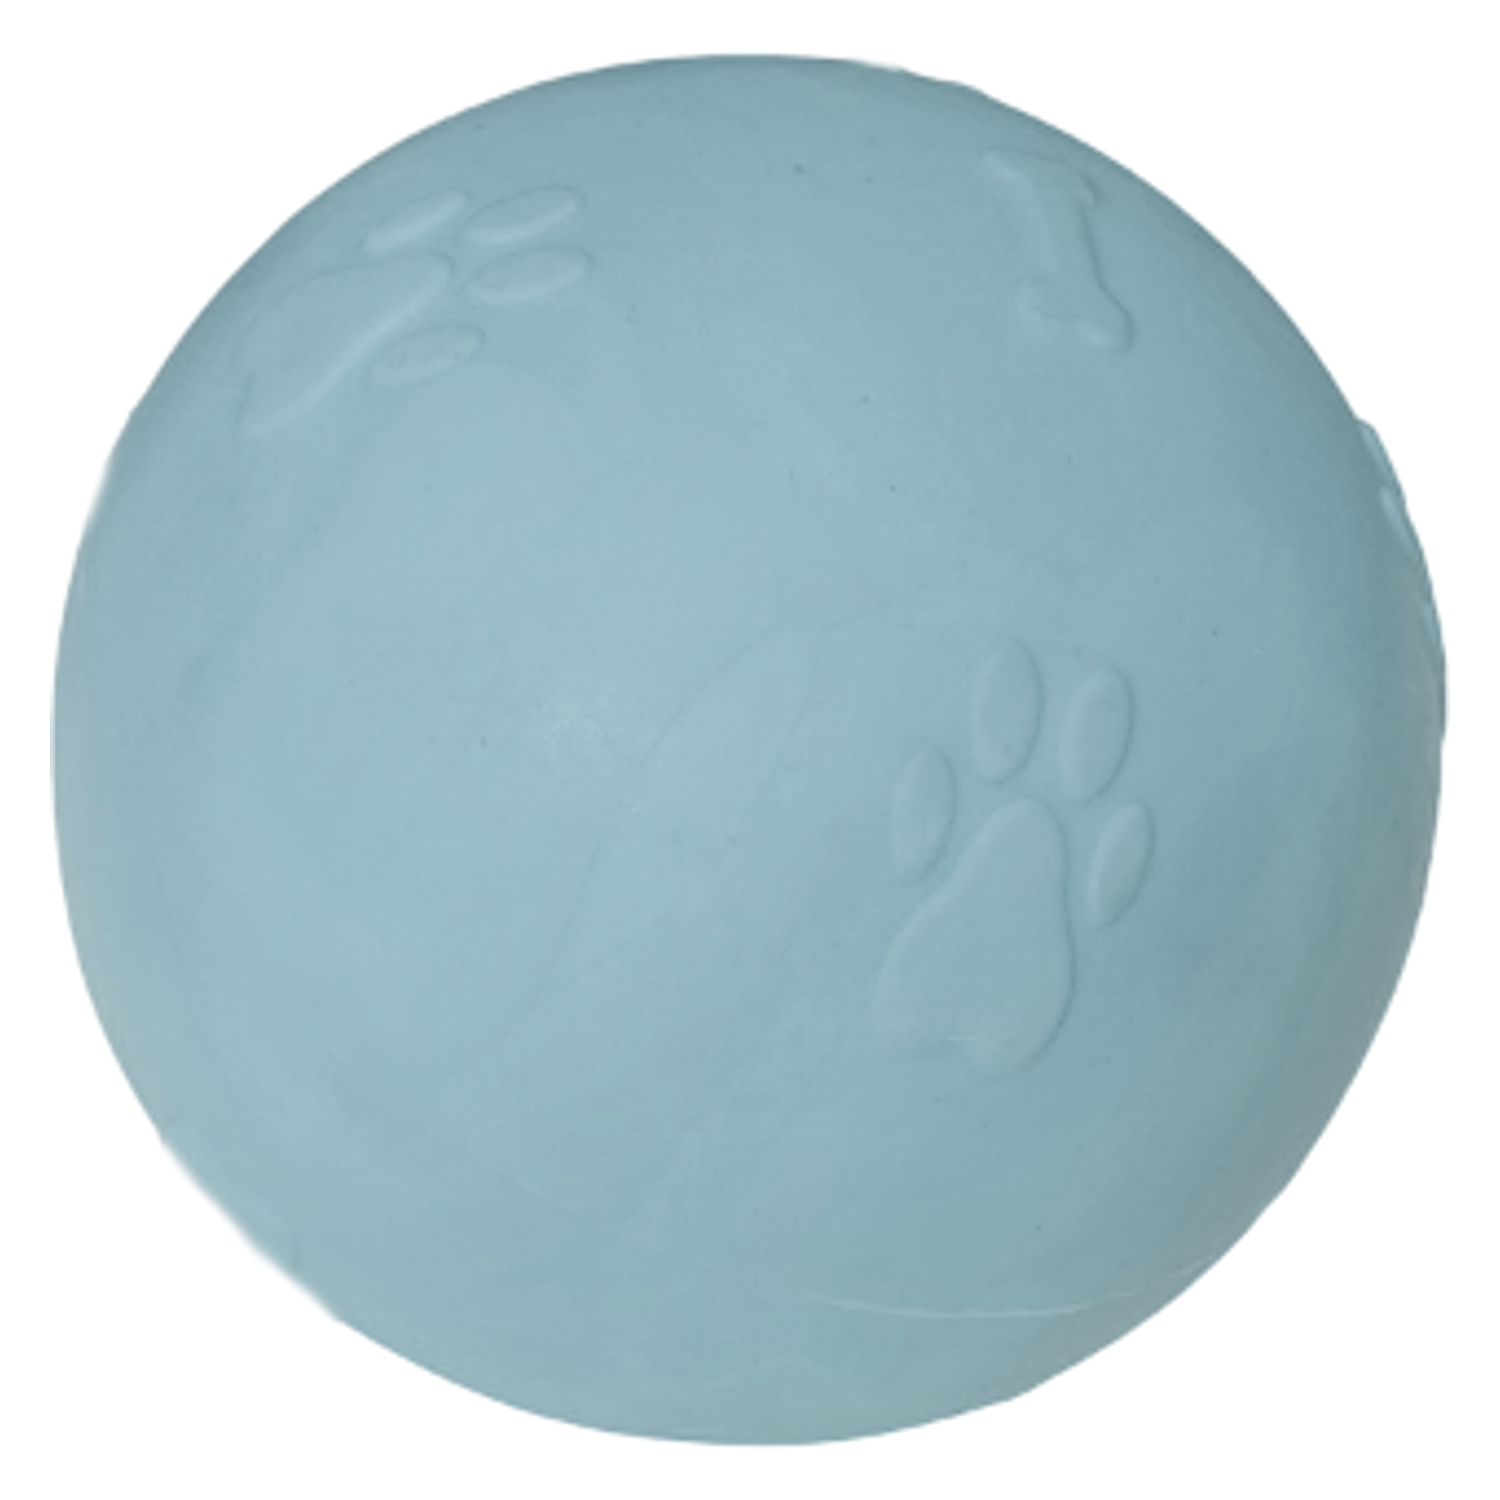 CLZ205 Pati Desenli Sert Köpek Oyun Topu 7 cm Medium Açık Mavi